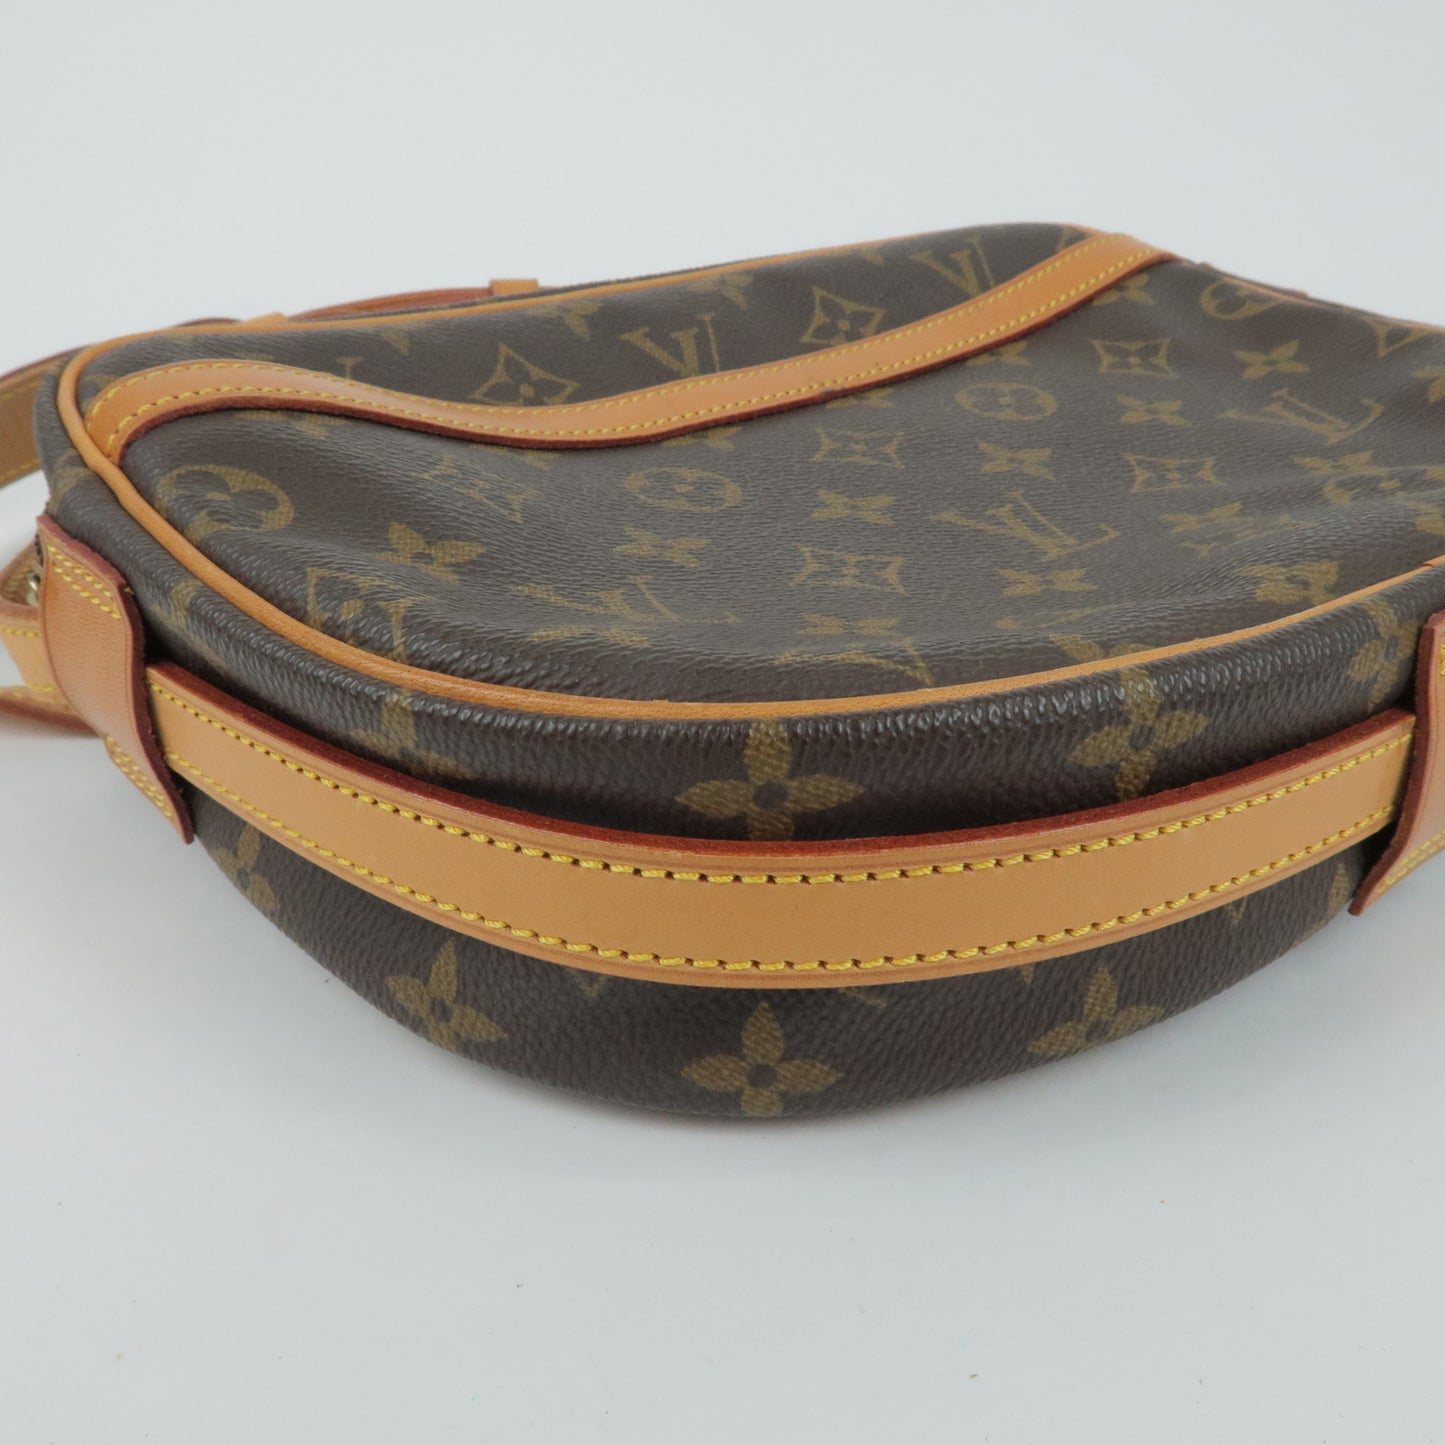 Louis Vuitton Monogram Jeune Fille 25 MM Shoulder Bag M51226